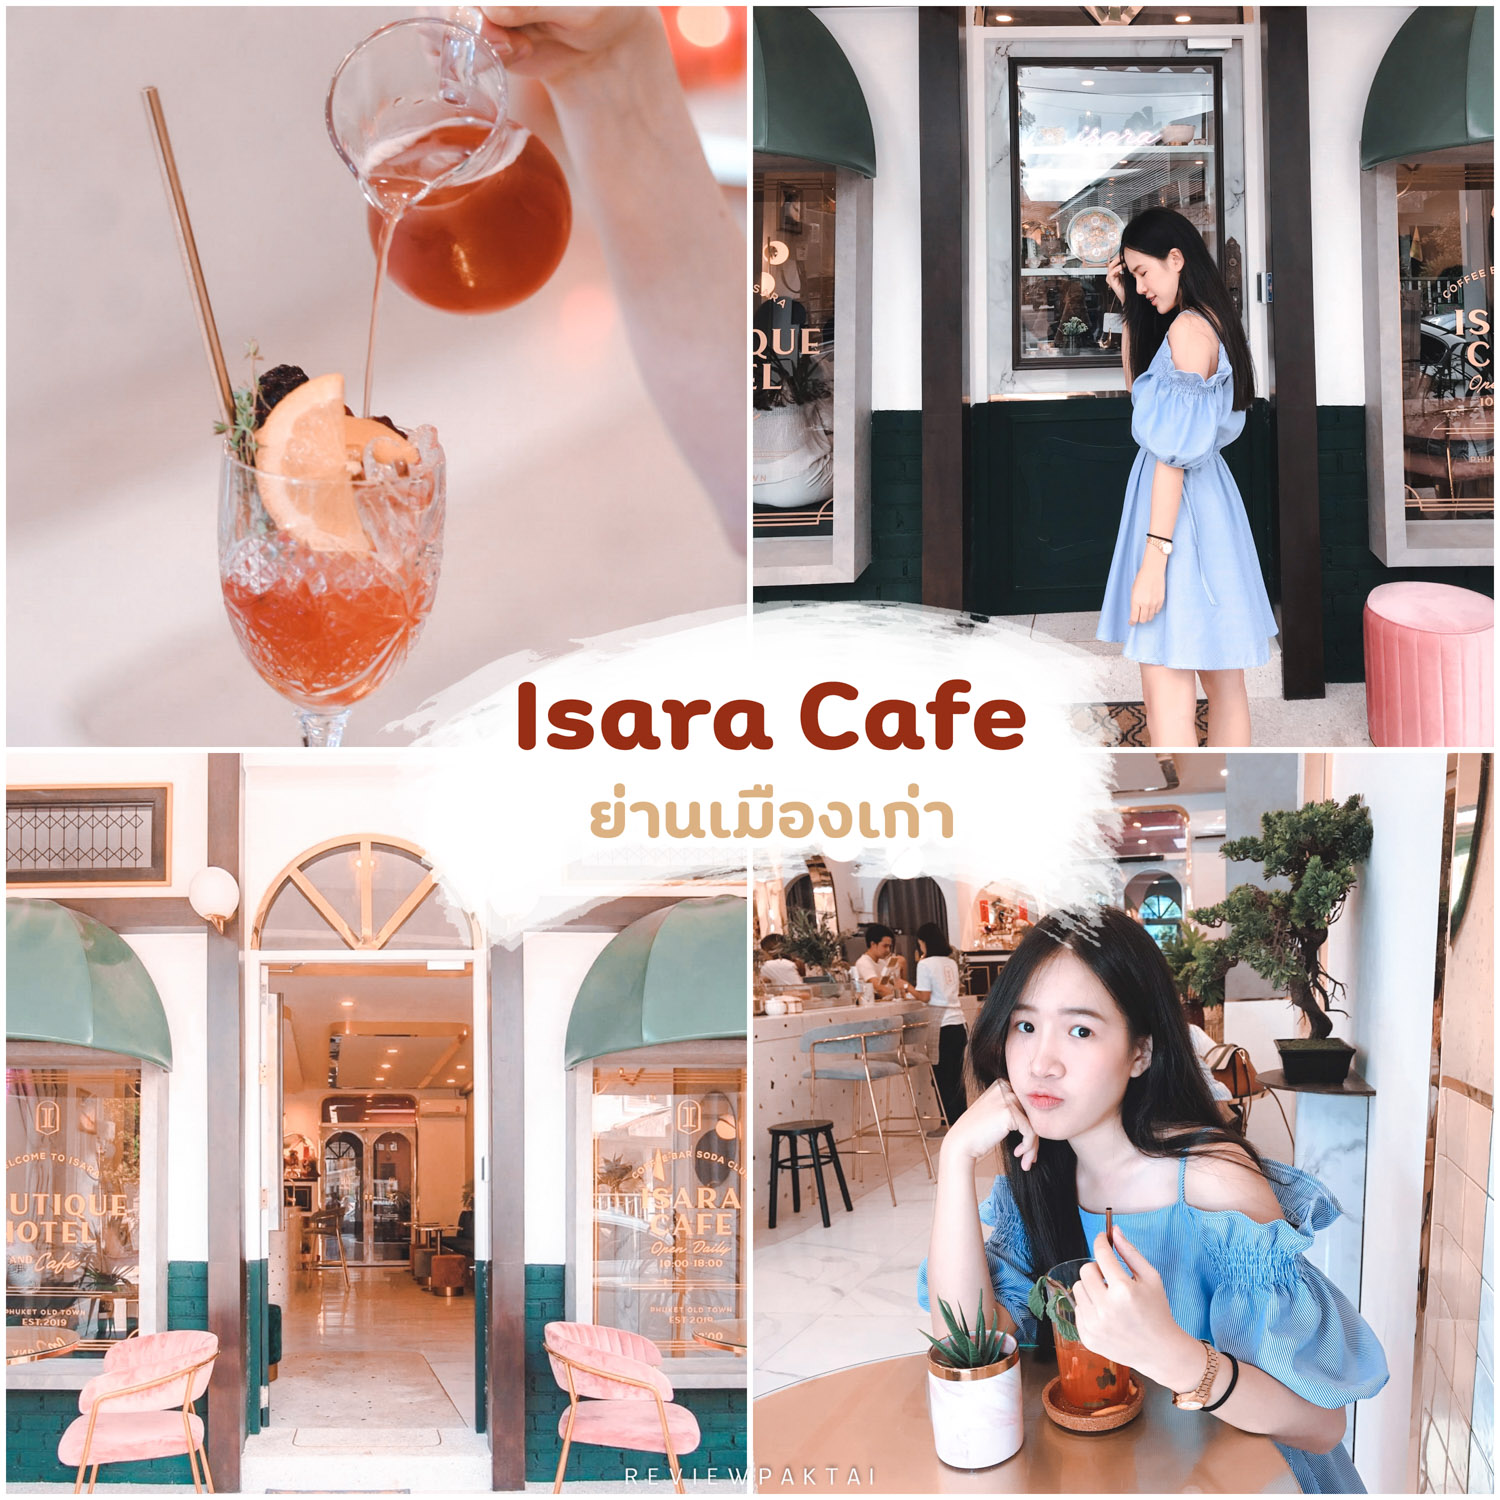 Isara-Cafe -ย่านเมืองเก่า-คาเฟ่หรูดูดี-หลากหลายเมนูอร่อยเลยย-ตกแต่งโทนสีเขียวปนทองๆตัดขาว-ถ่ายรูปสวยสุดๆ
 ที่เที่ยวภูเก็ต,ย่านเมืองเก่า